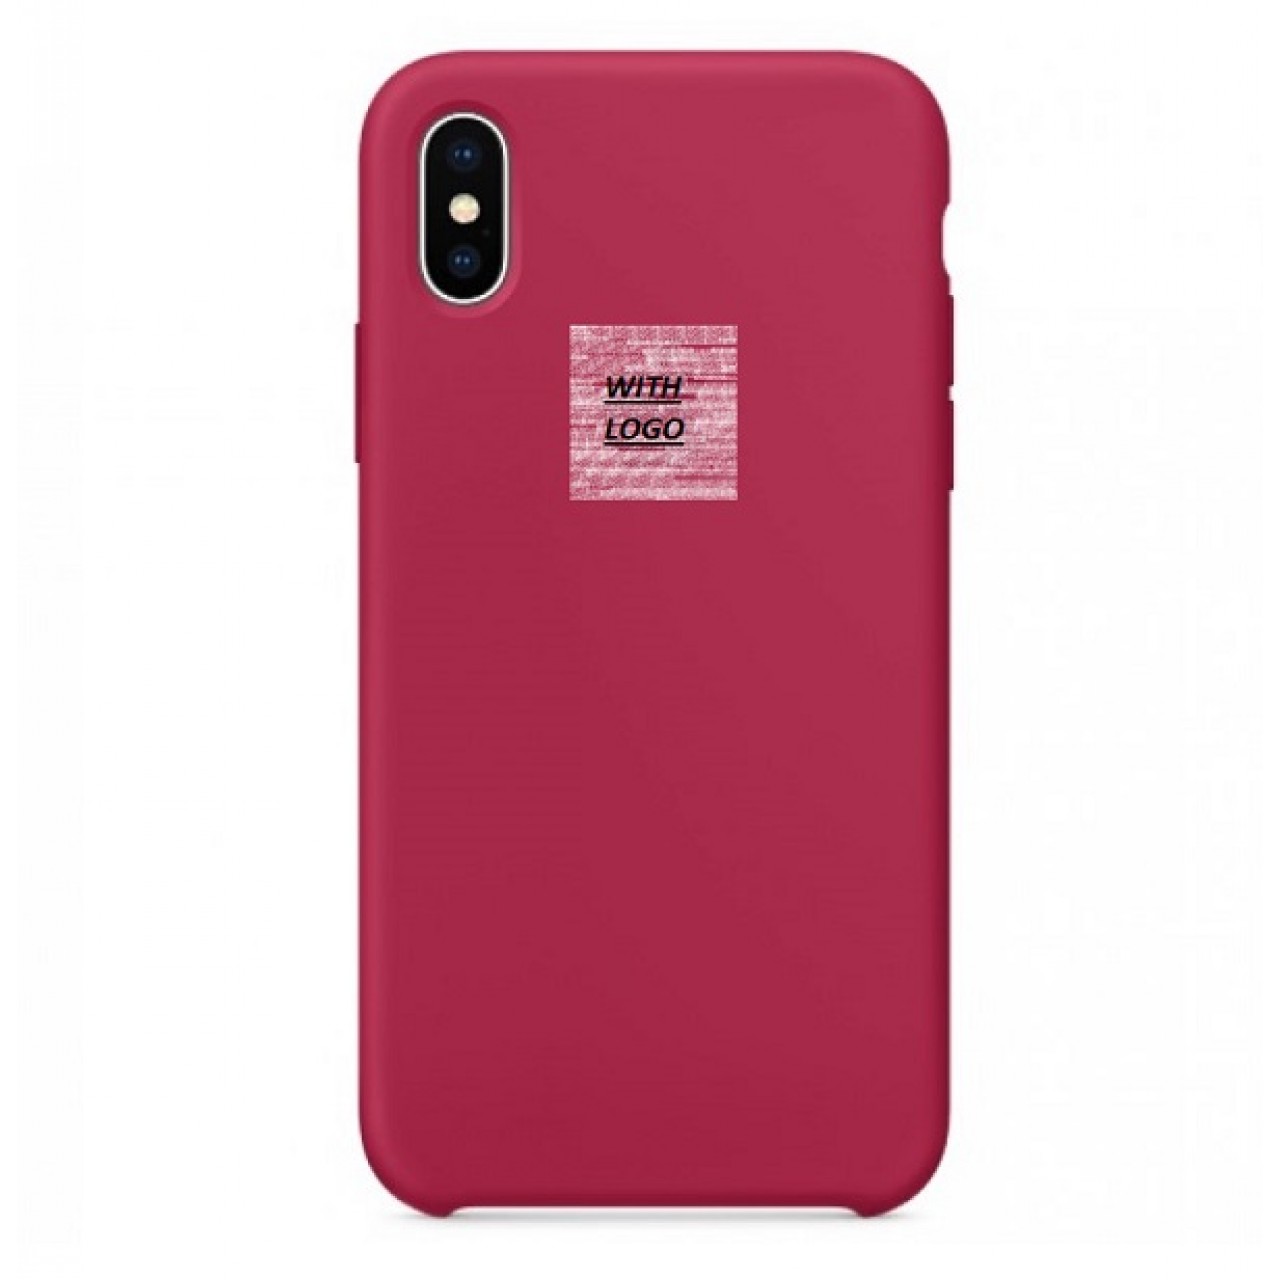 Θήκη Προστασίας Σιλικόνης iPhone XS Max - Back Cover Silicone Case - Rose Red